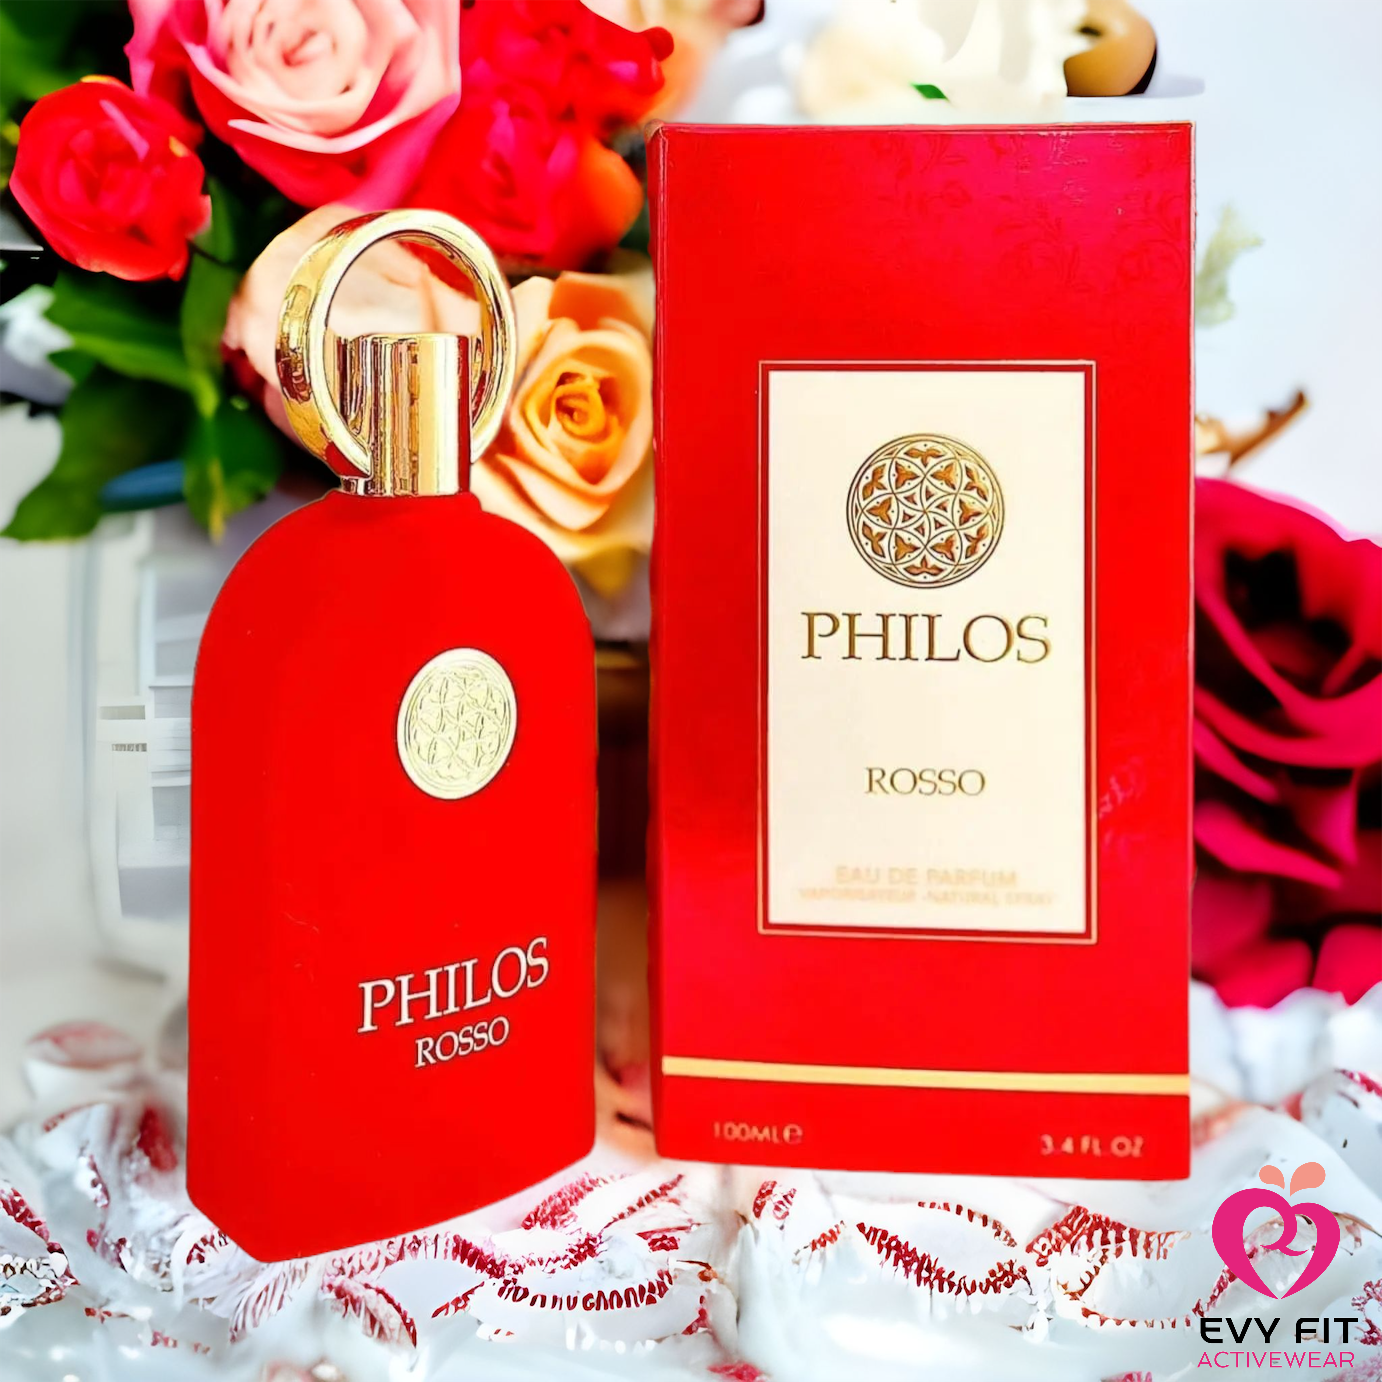 Philos rosso como bacarat 540 (Perfum árabe UNISEX)